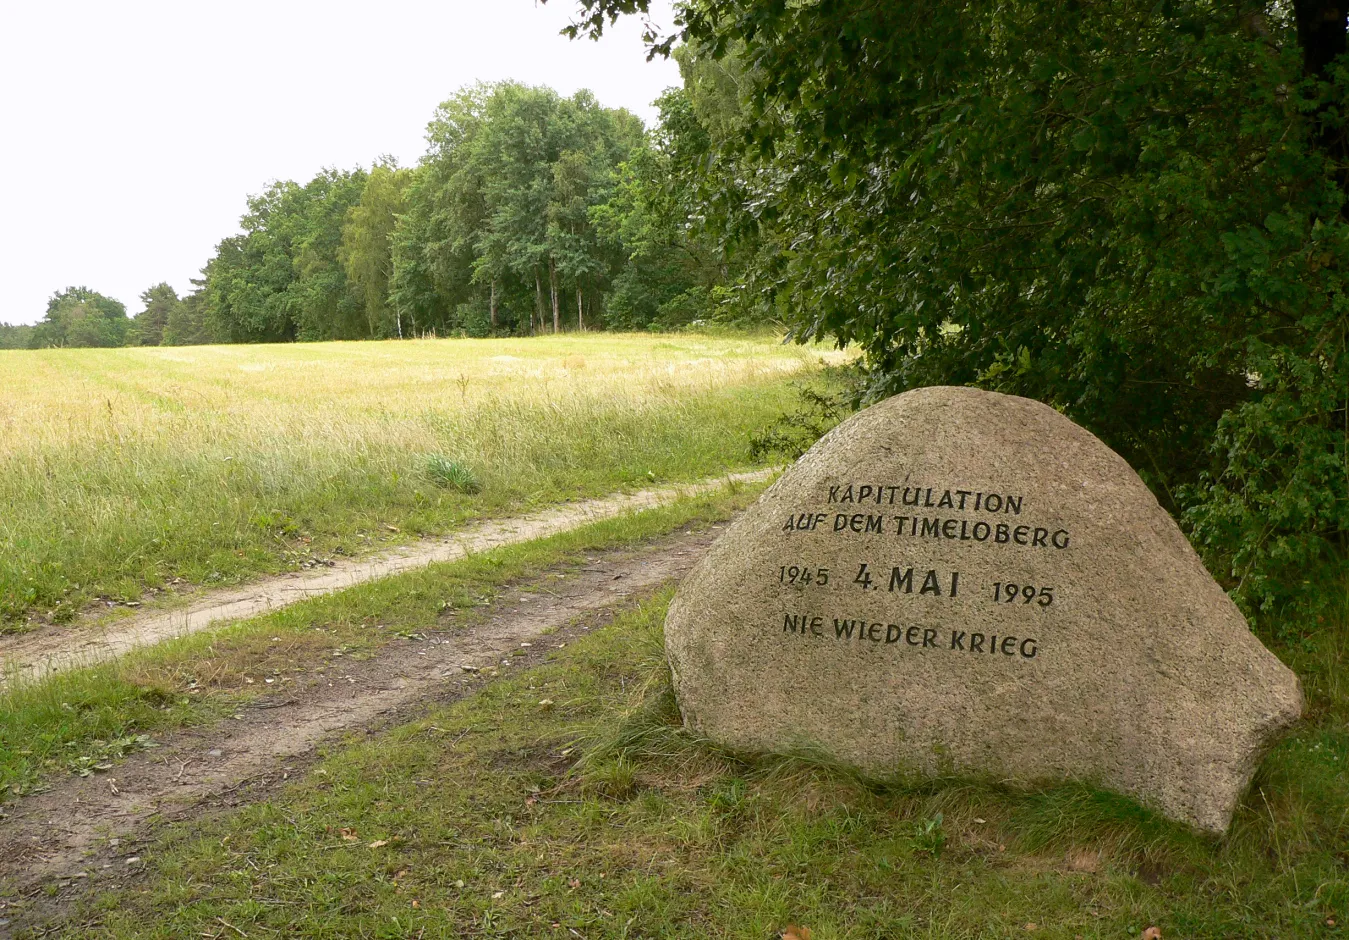 Photo showing: Am 4. Mai 1995 am Rande des Timeloberges aufgestellter Gedenkstein zum Gedenken an die Unterzeichnung der Kapitulation am 4. Mai 1945. Aufstellung außerhalb des Übungsplatzes bei Wendisch Evern